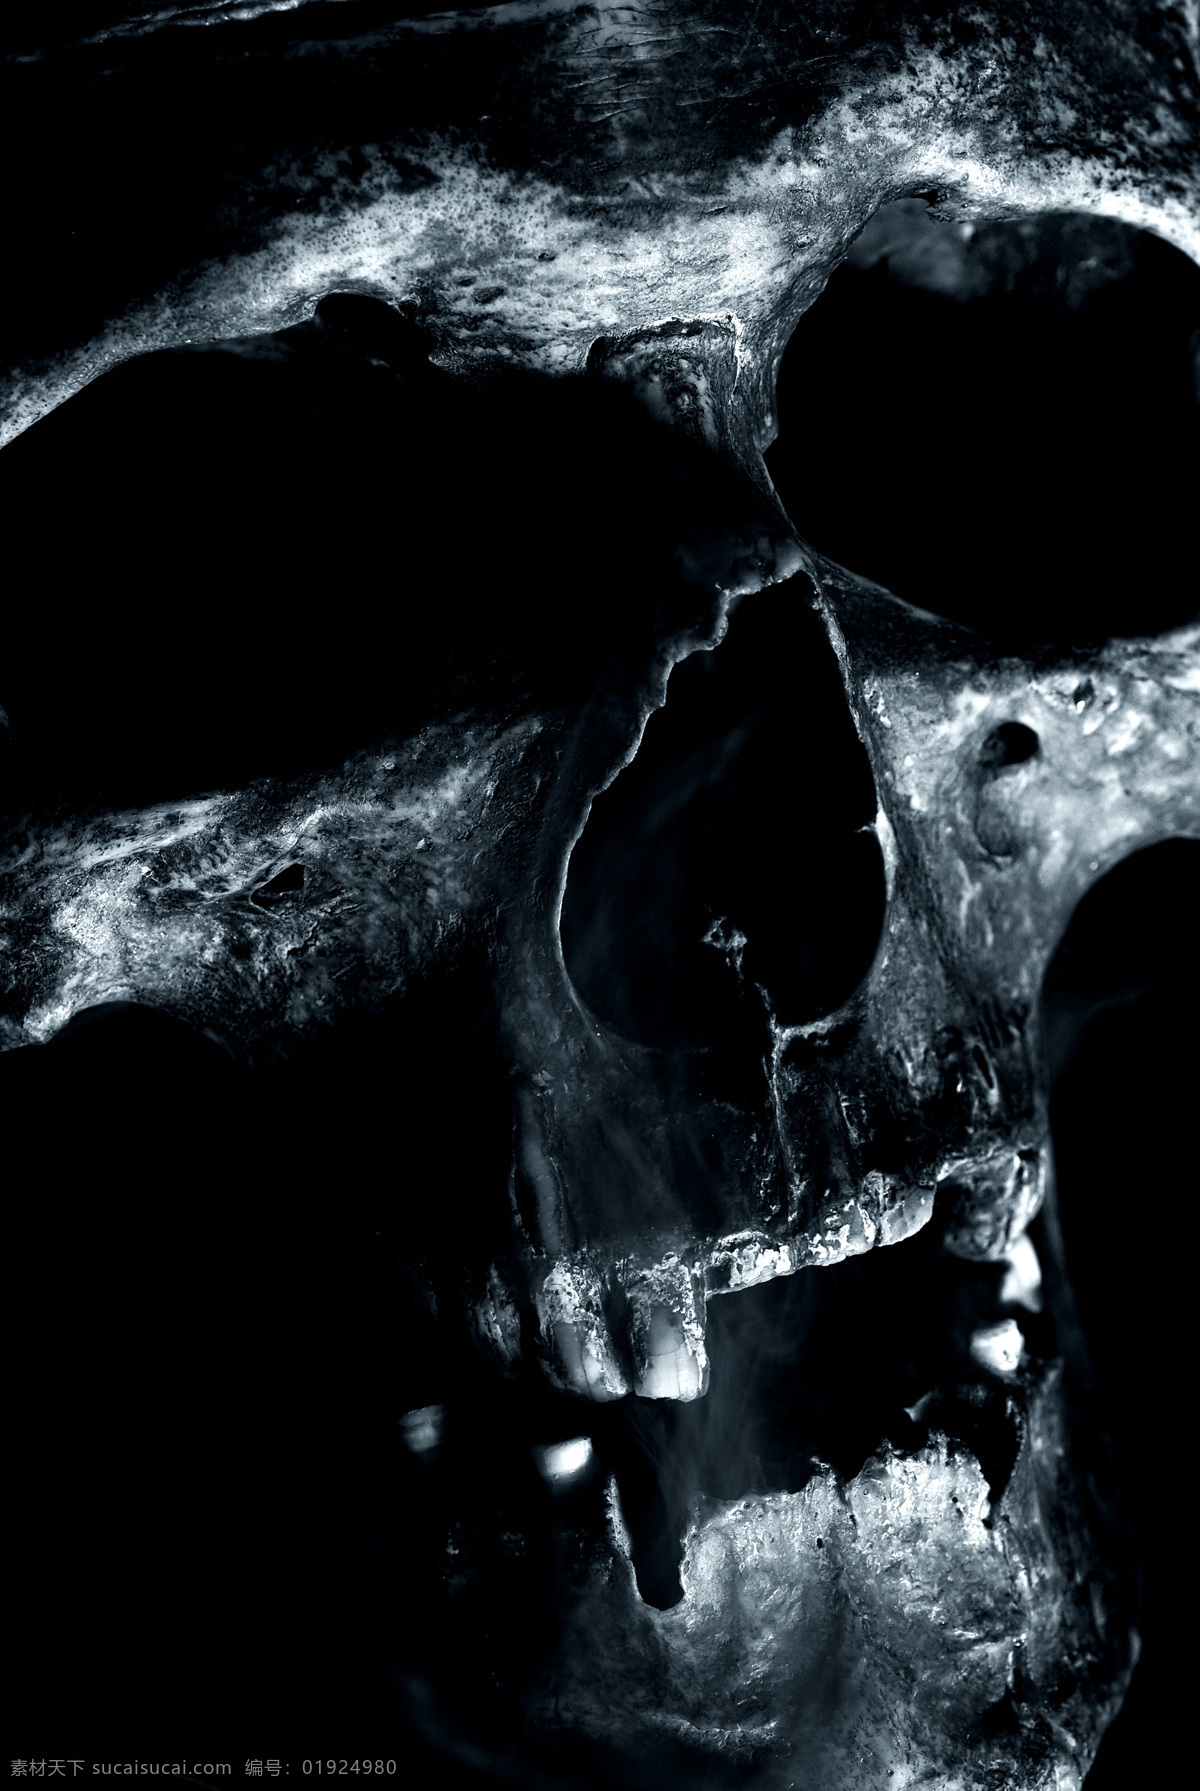 骷髅 头 特写 骷髅头 skulls 恐怖 恐怖元素 头颅 高清图片 骷髅头特写 人体器官图 人物图片